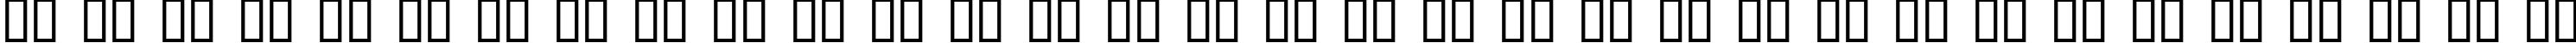 Пример написания русского алфавита шрифтом Buffied